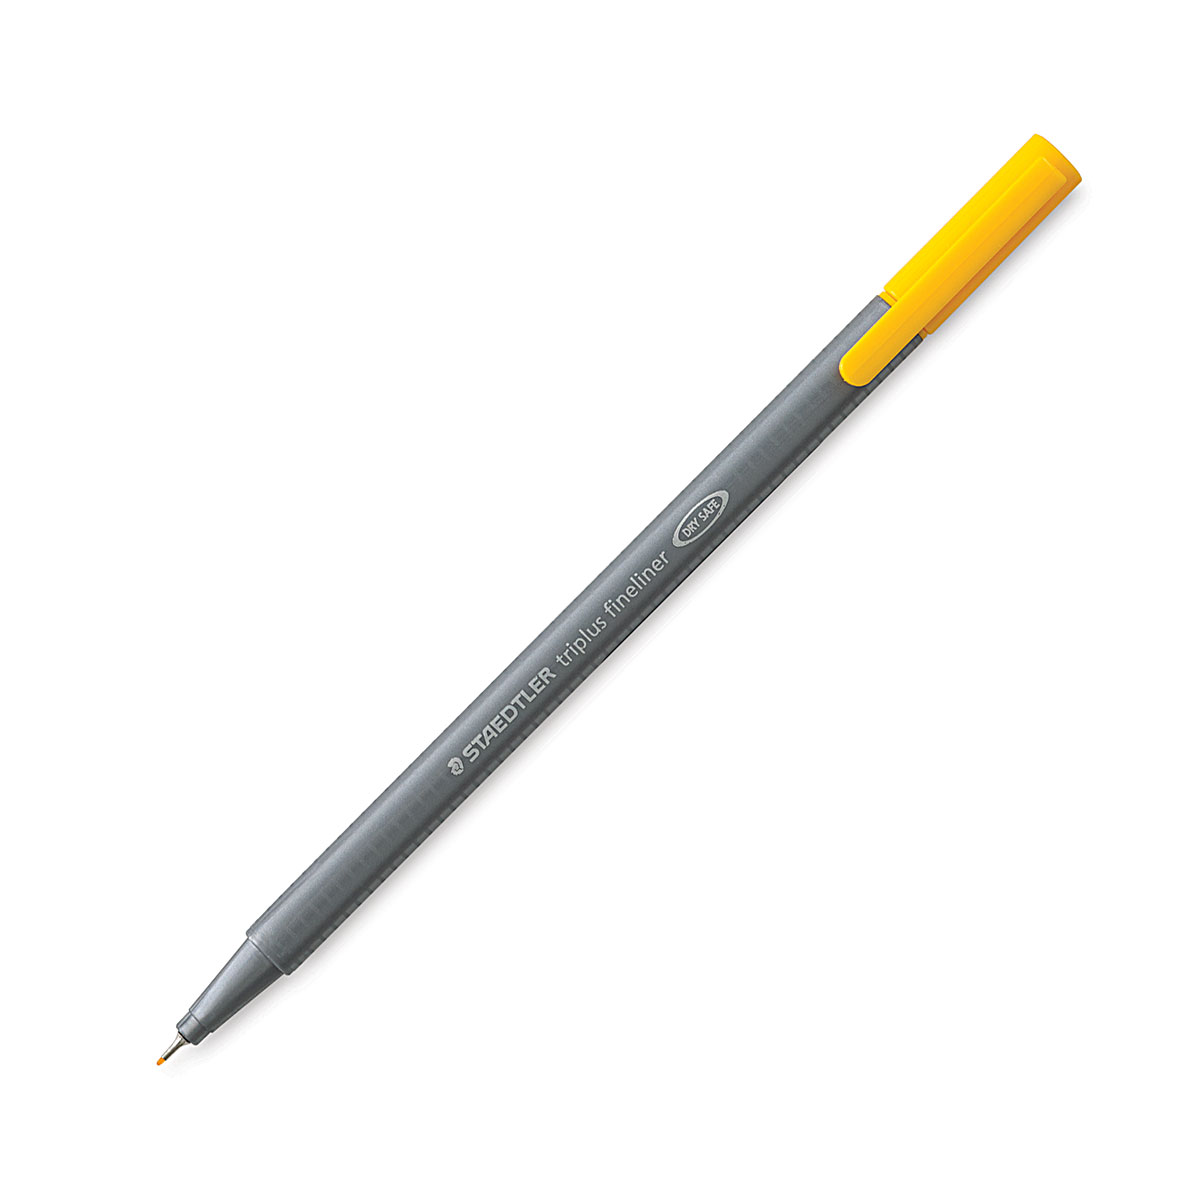 Staedtler TriPlus Fineliner Pen - Bright Yellow